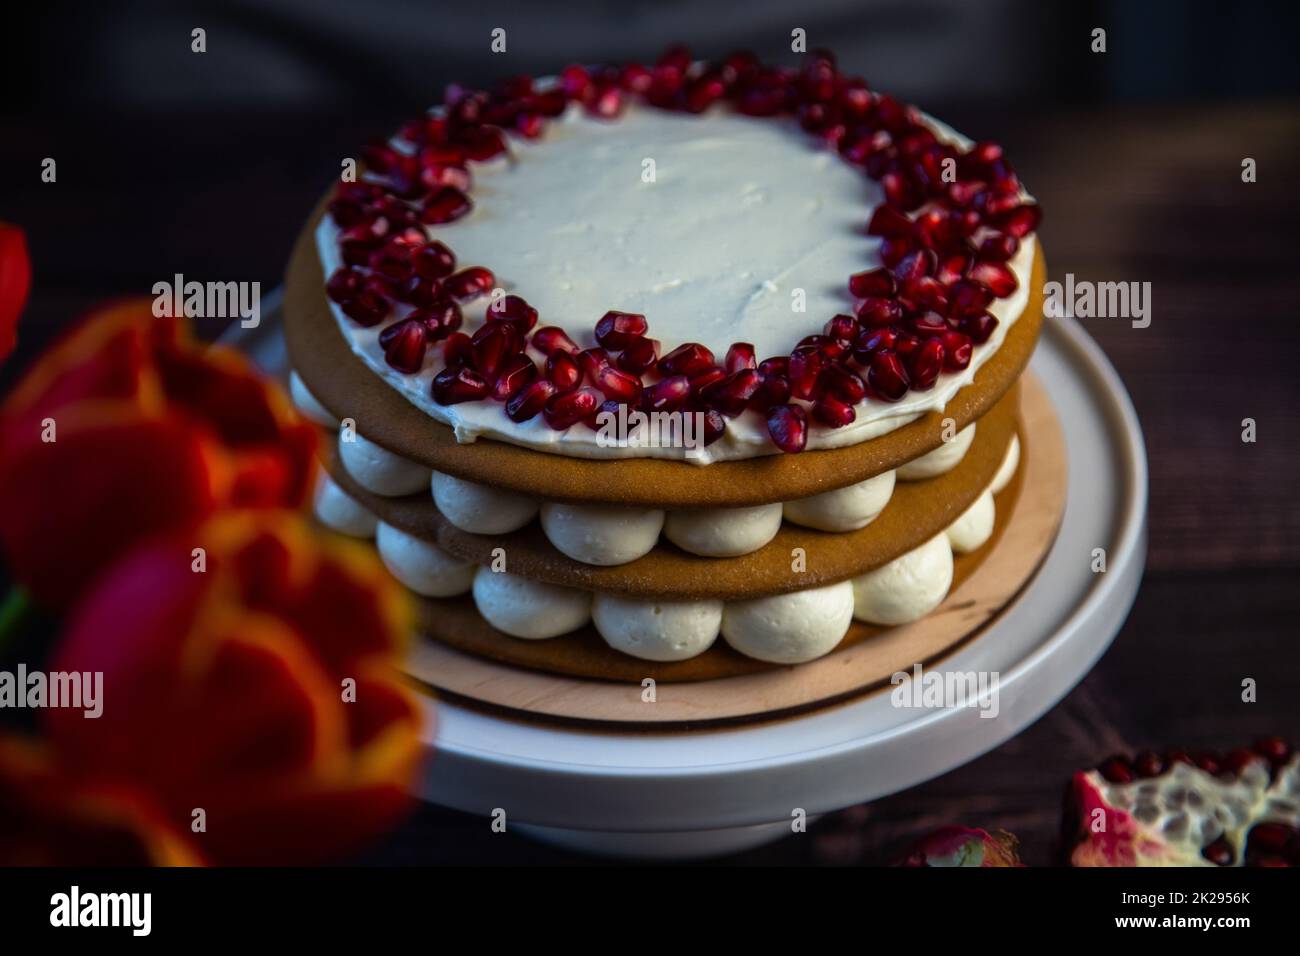 Ein dreischichtiger Kuchen aus Kuchen und weißer Sahne, dekoriert mit Granatapfel oben in einem Kreis, steht auf dunklem Hintergrund neben Tulpen und Granatäpfeln. Stockfoto